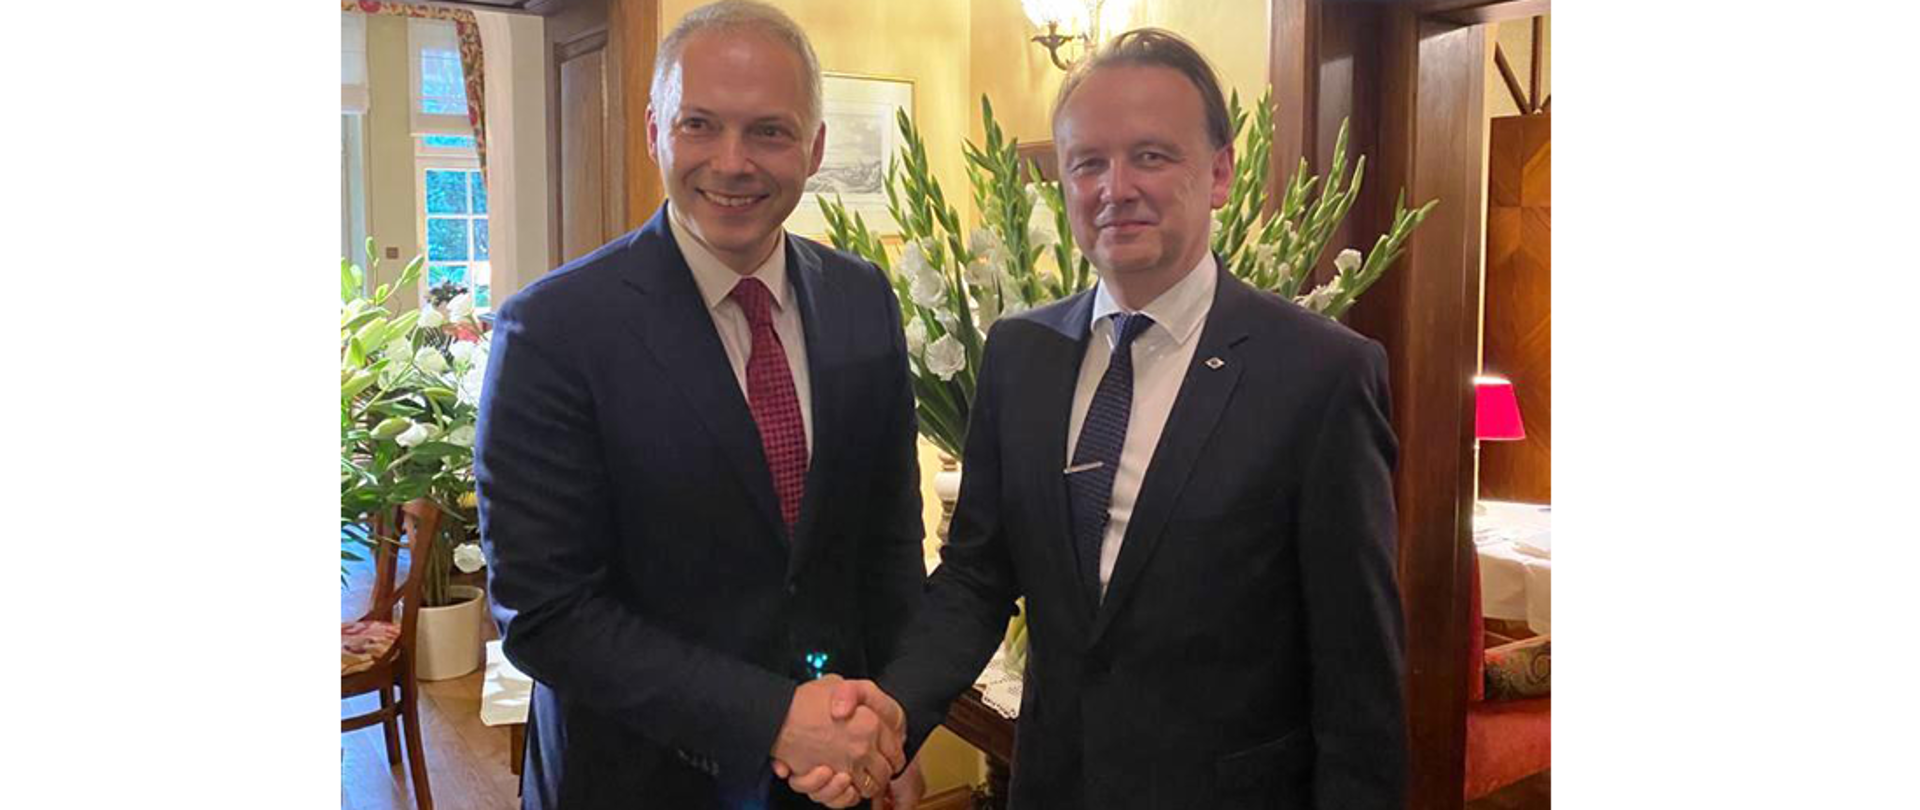 Wiceminister funduszy i polityki regionalnej Jacek Żalek z Arnoldasem Abramavičiusem, wiceminister spraw wewnętrznych Litwy podają sobie ręce.